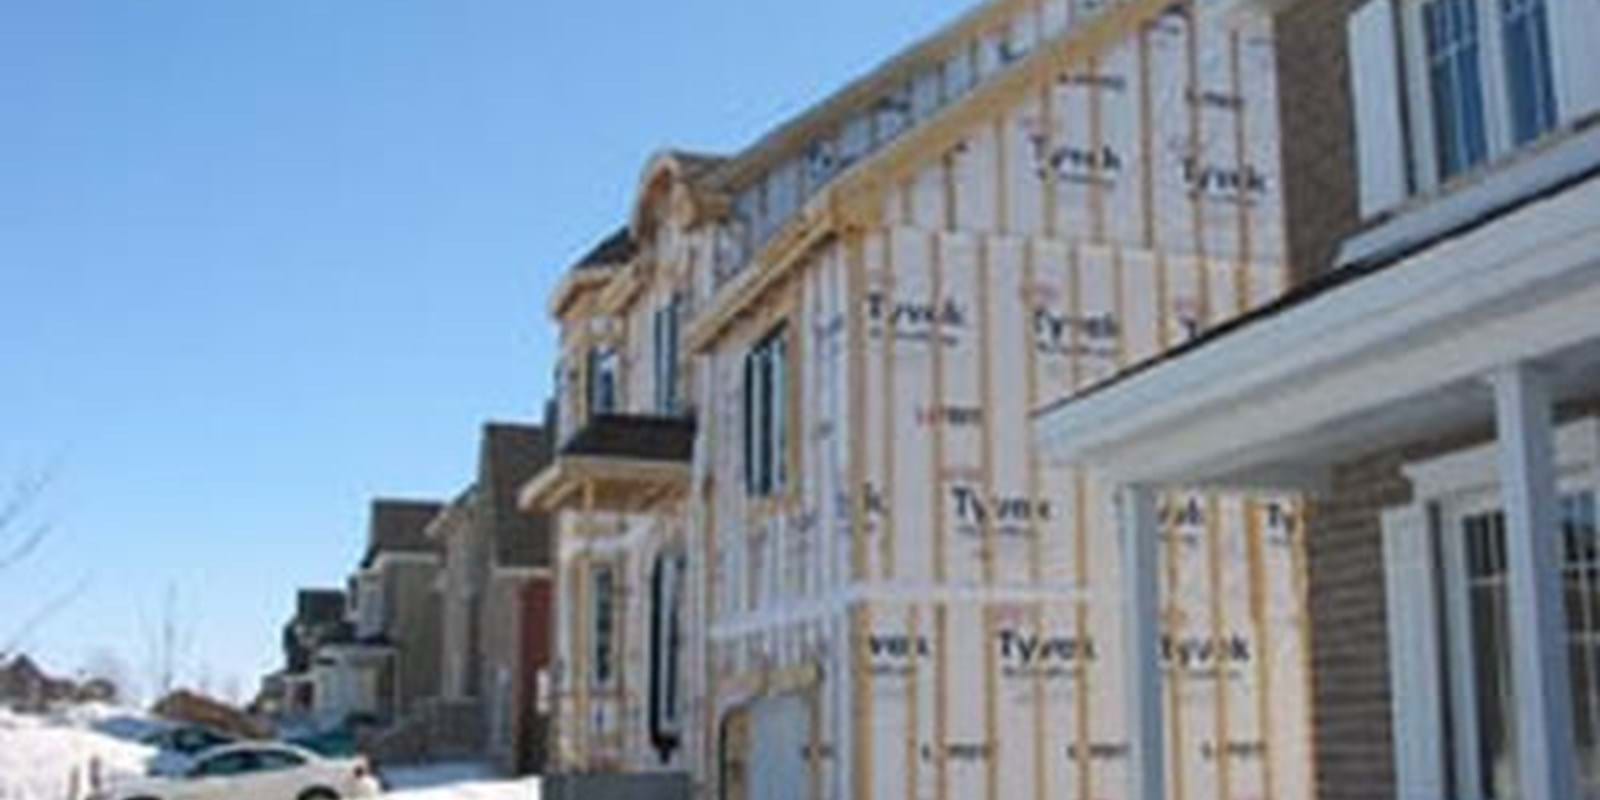 La tendance des mises en chantier d’habitations était à la hausse au Canada en décembre